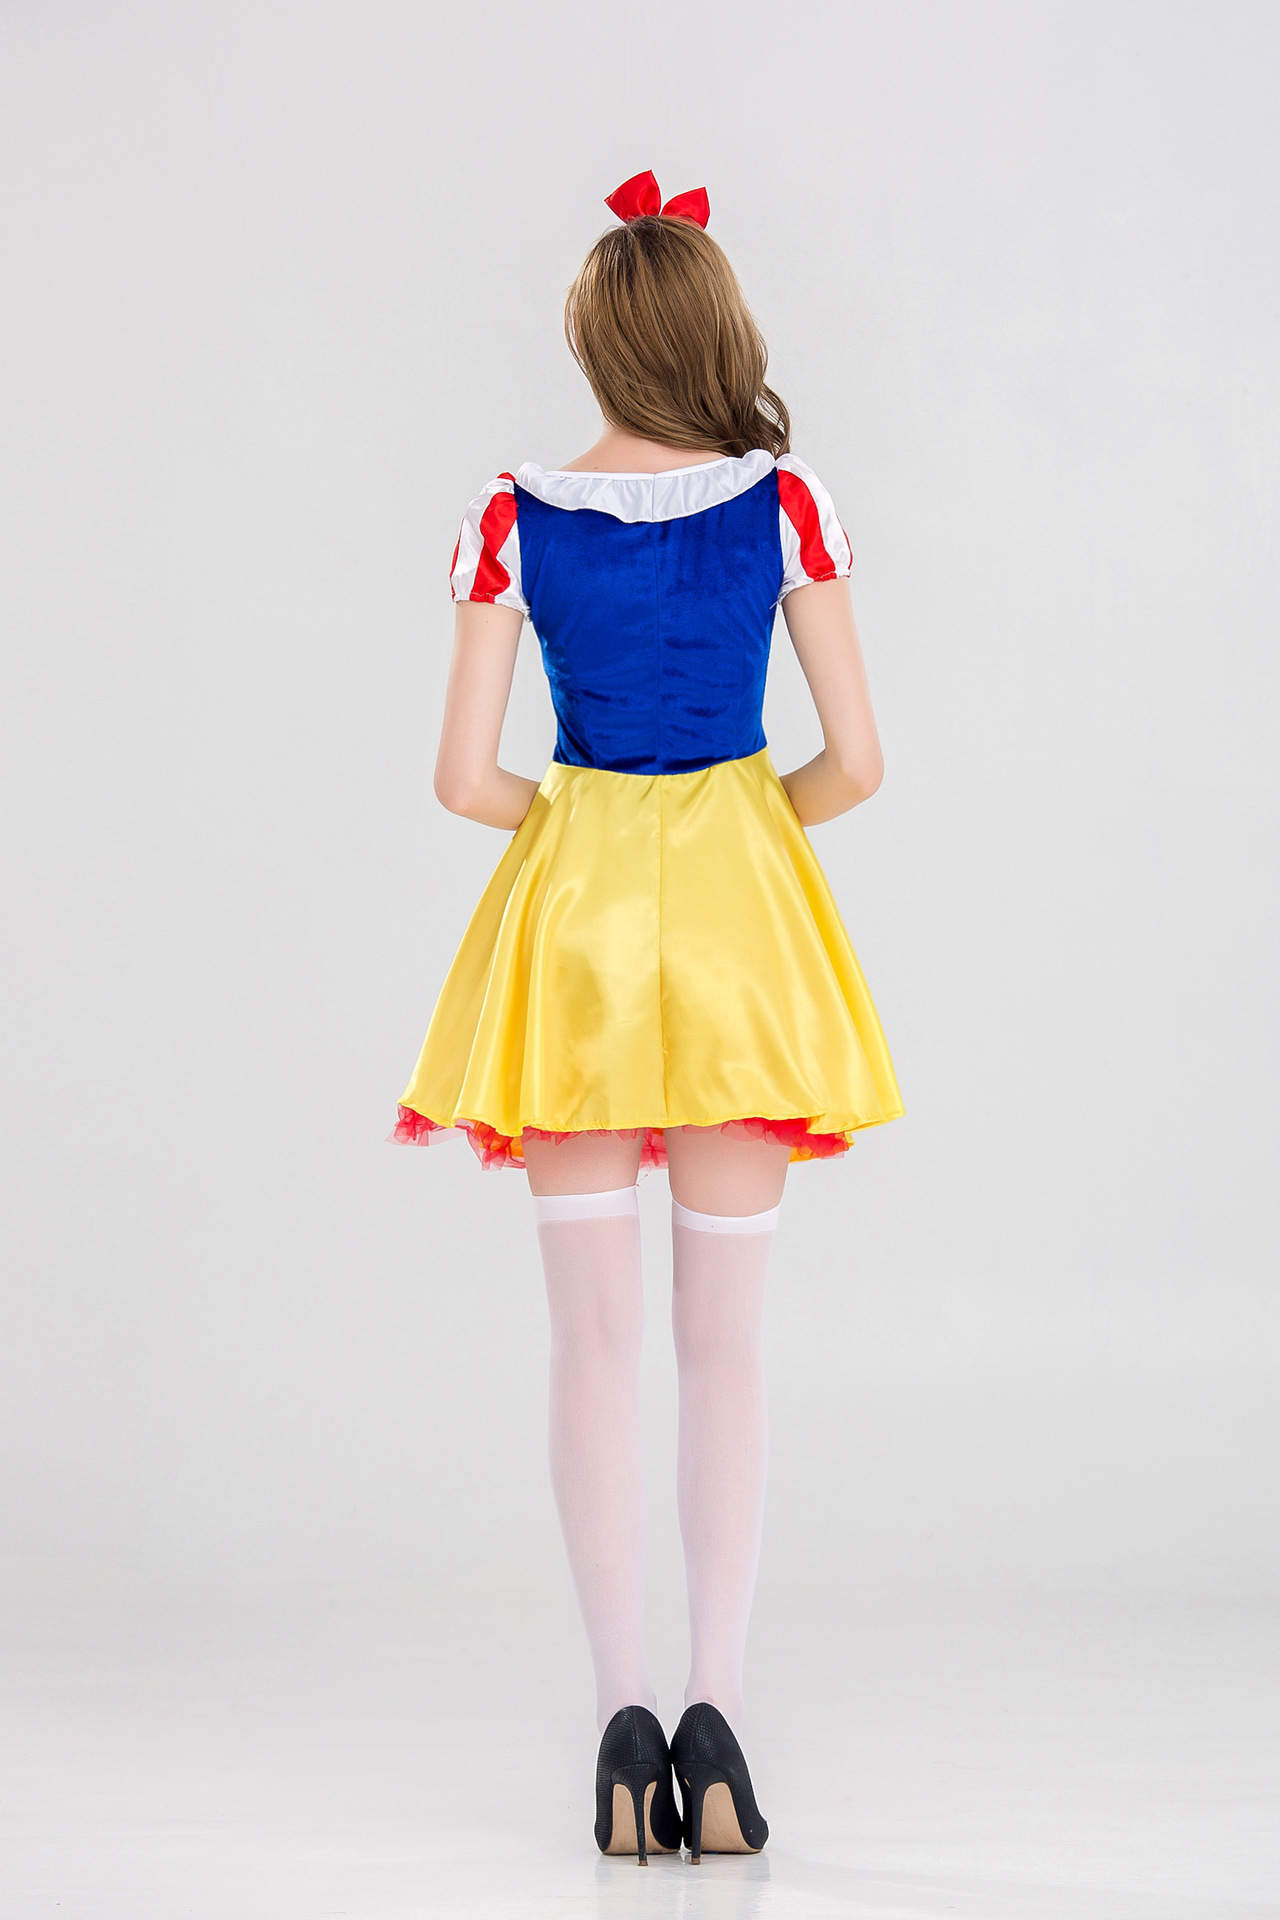 Snow White Adult Costume, Snow White Short Skirt